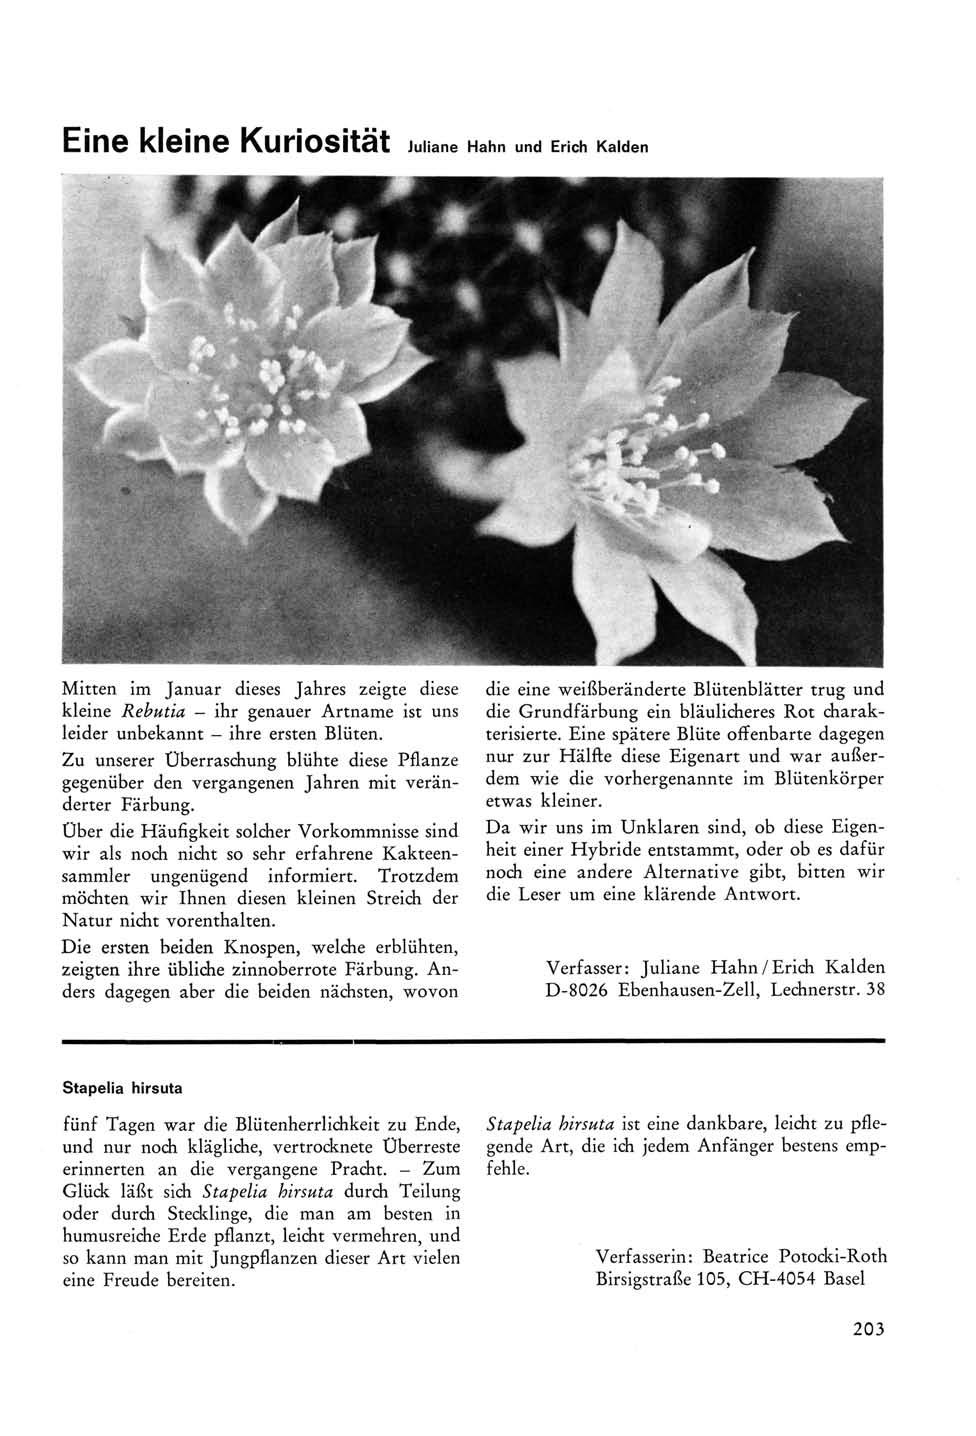 Eine kleine KuriOSität Juliane Hahn und Erich Kalden Mitten im Januar dieses Jahres zeigte diese kleine Rebutia - ihr genauer Artname ist uns leider unbekannt - ihre ersten Blüten.